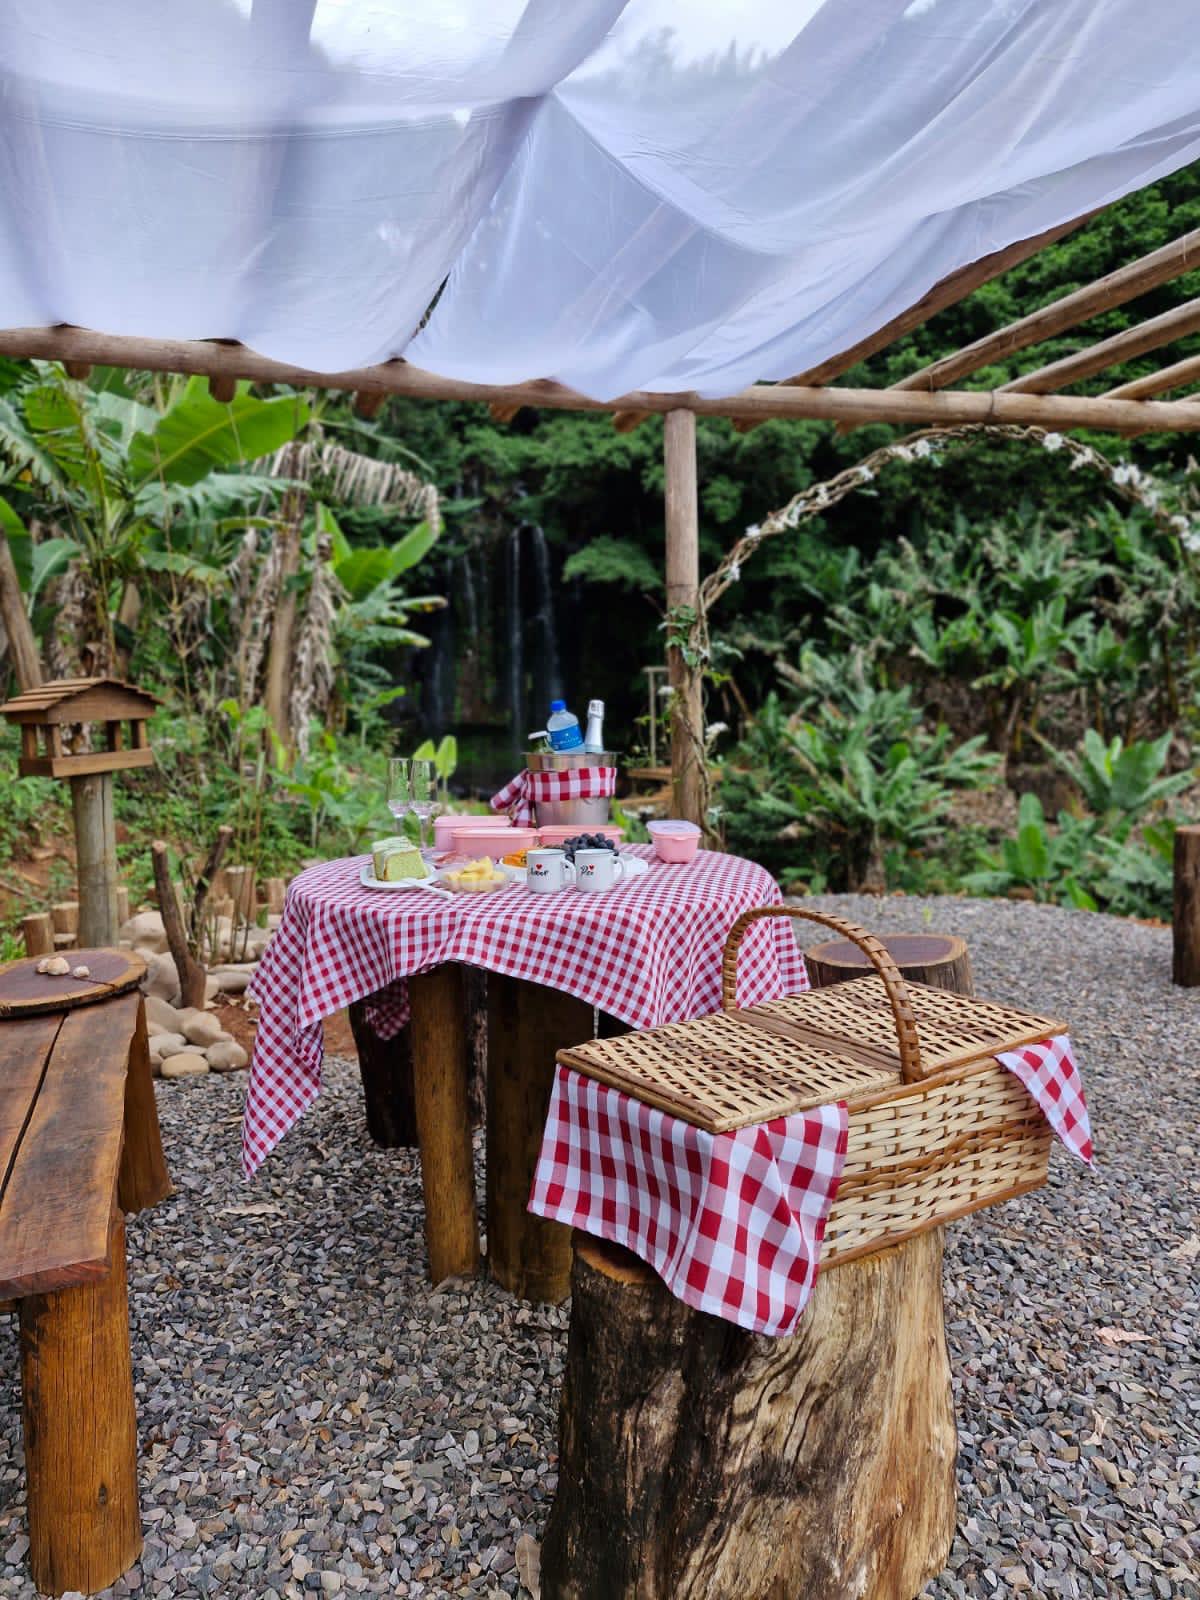 Mesa de piquenique com uma toalha quadriculada branca e vermelha com comida em cima e uma cesta ao lado da mesa.